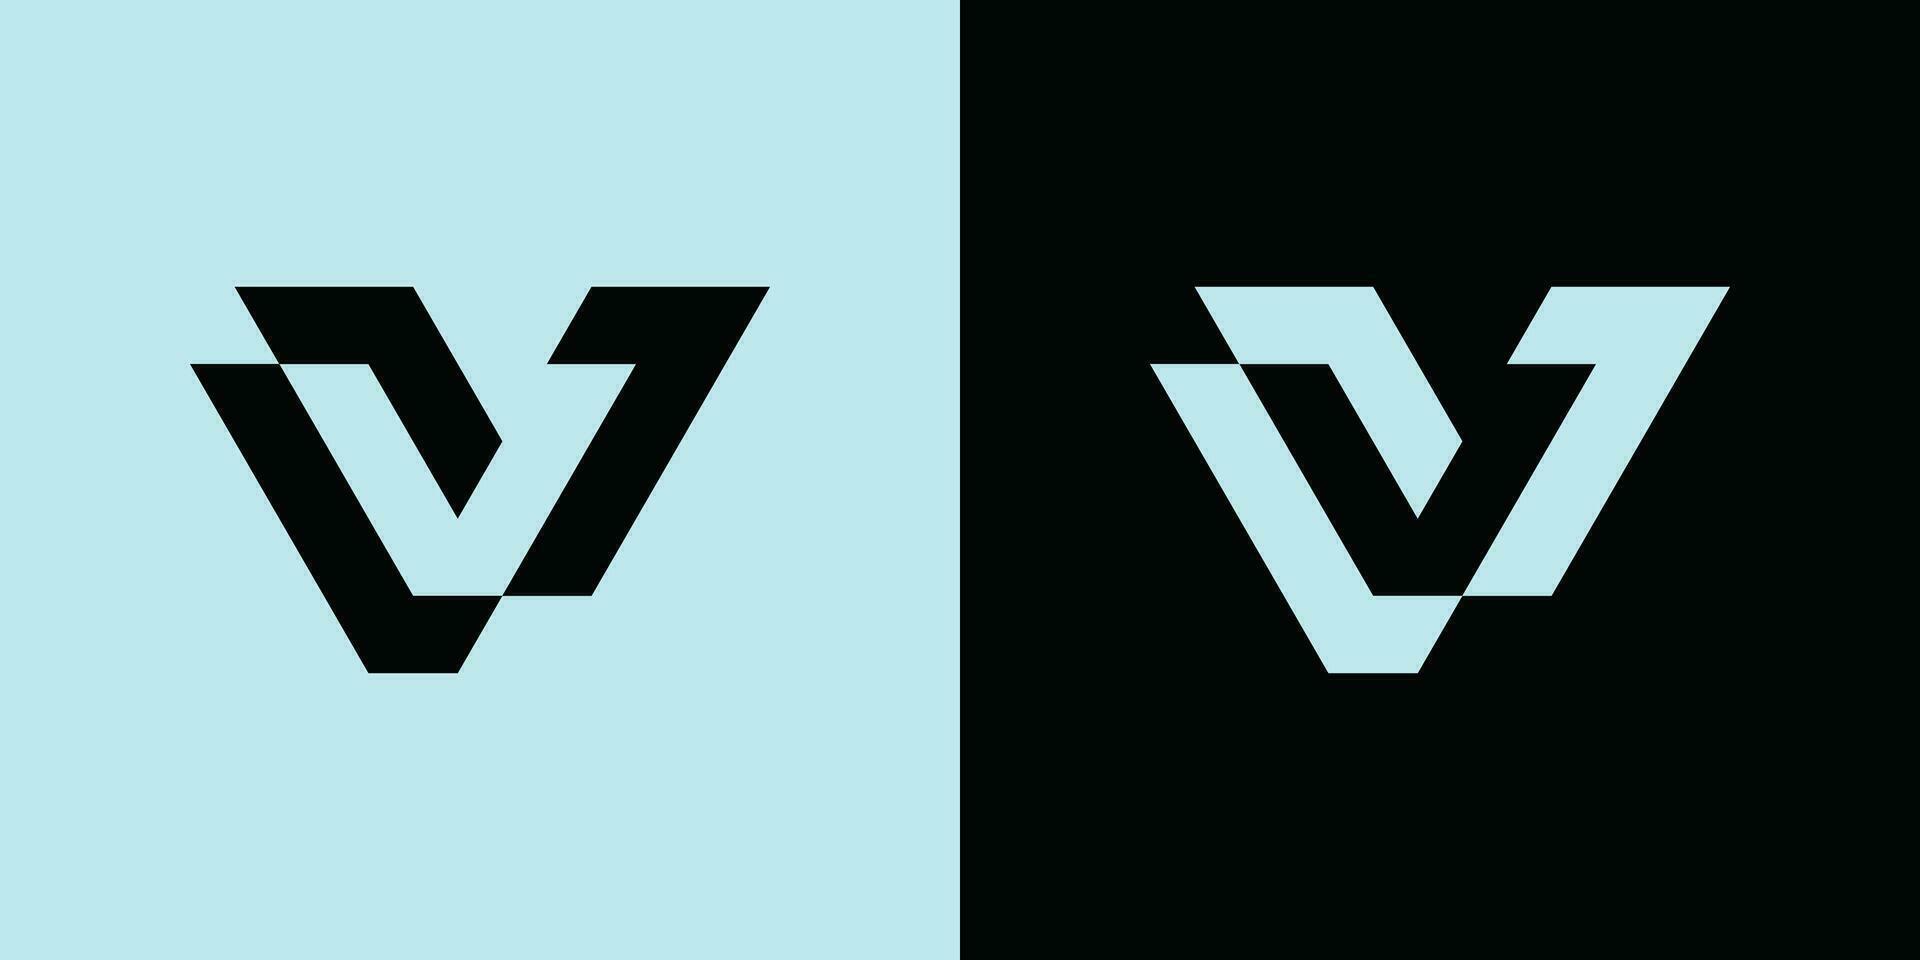 V L Initial letter hexagonal logo vector